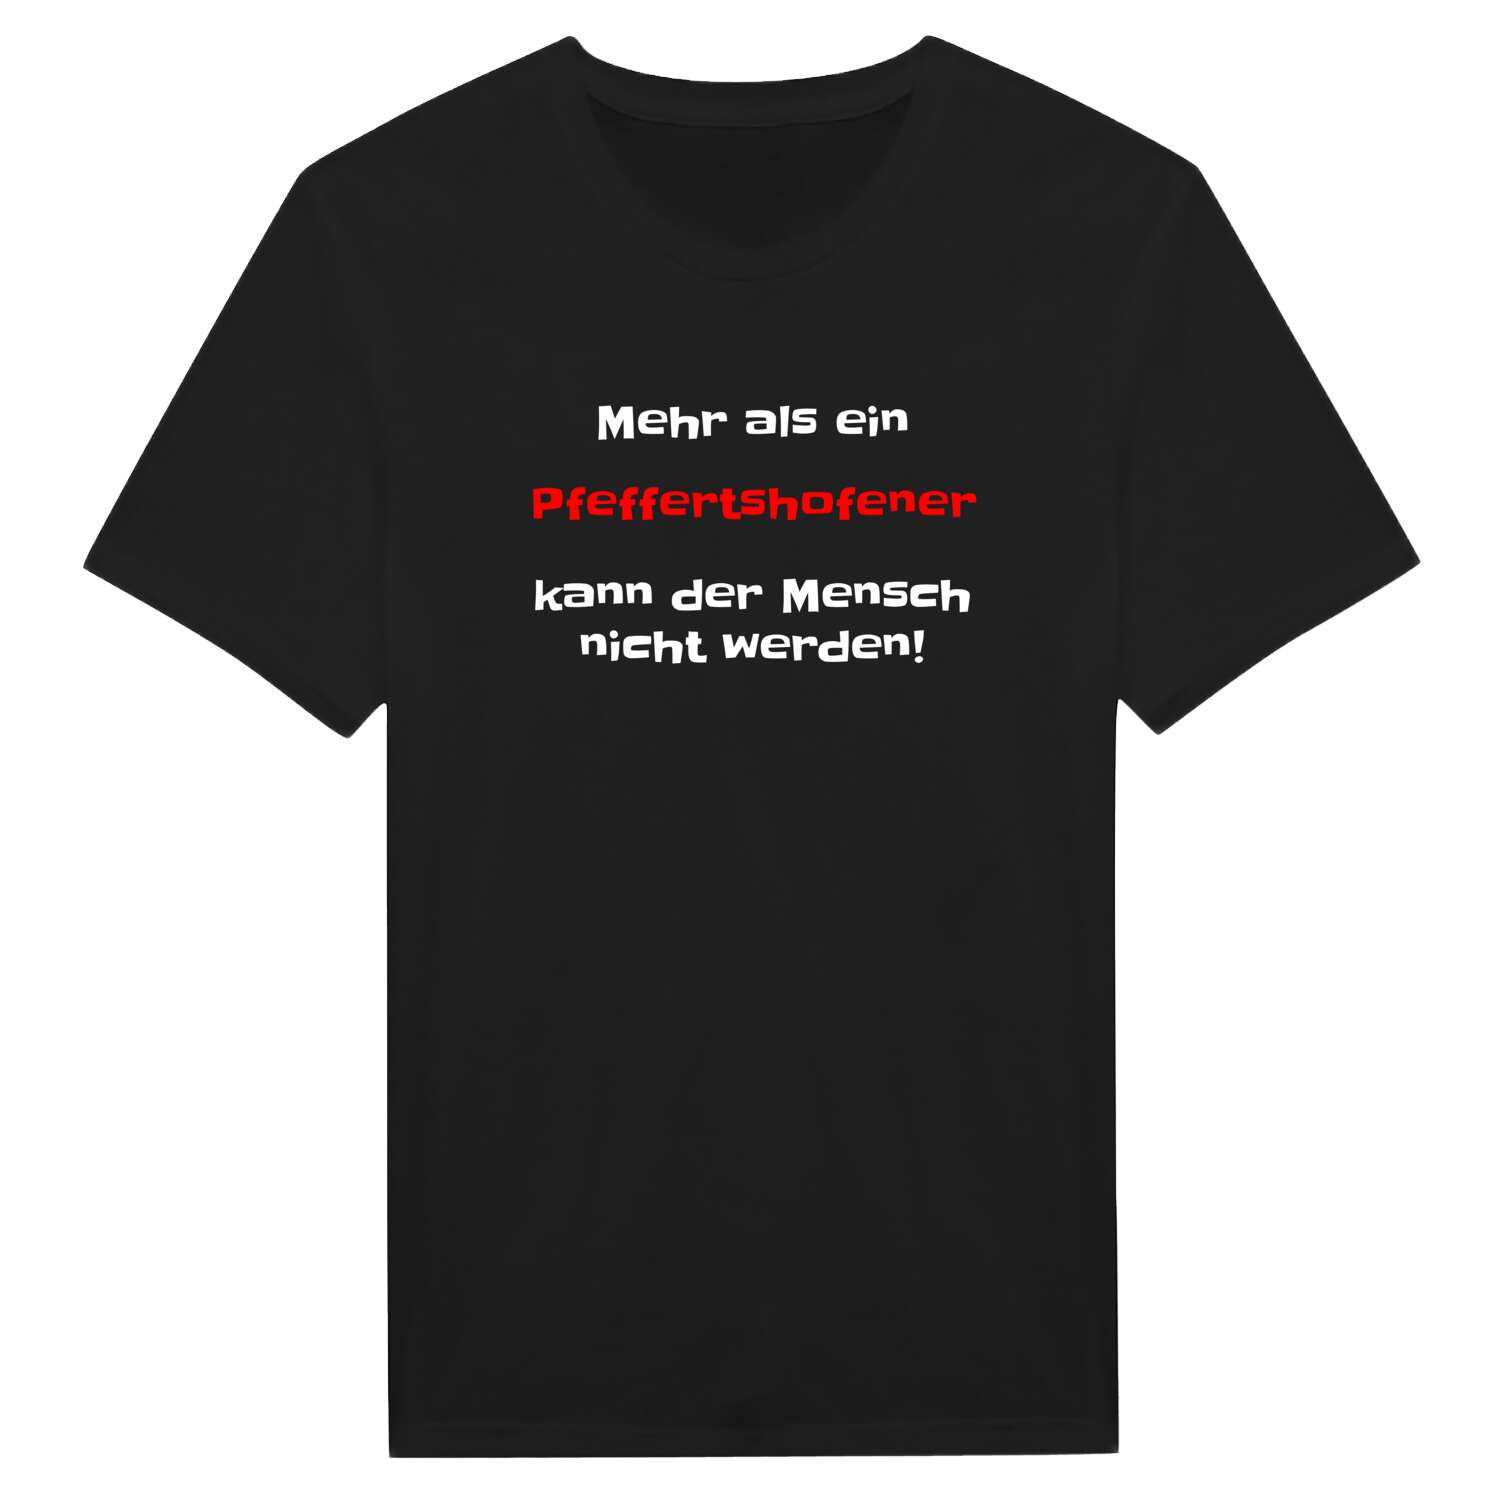 Pfeffertshofen T-Shirt »Mehr als ein«